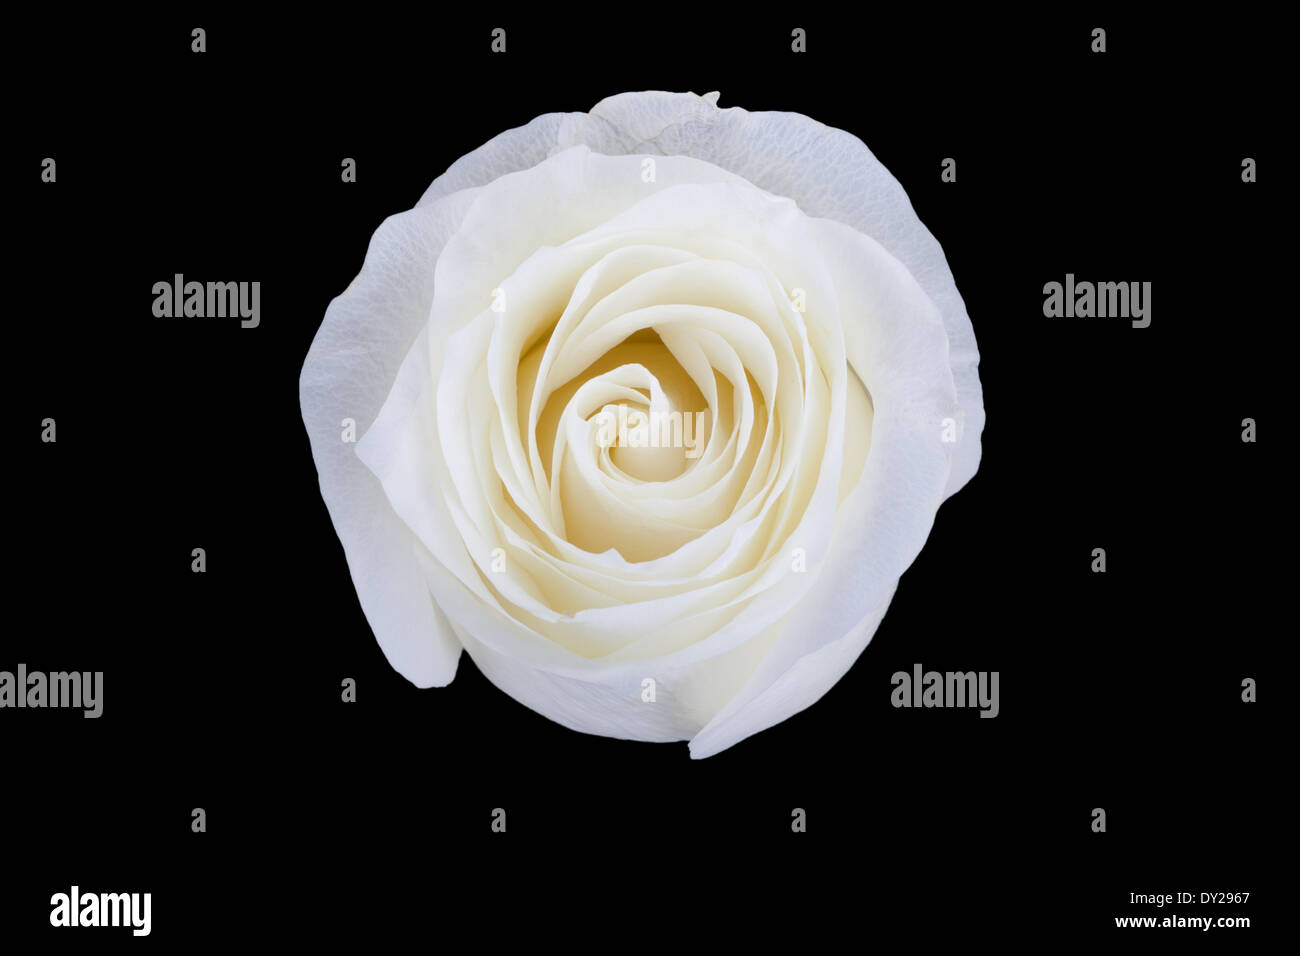 White rose isolated on black background Stock Photo